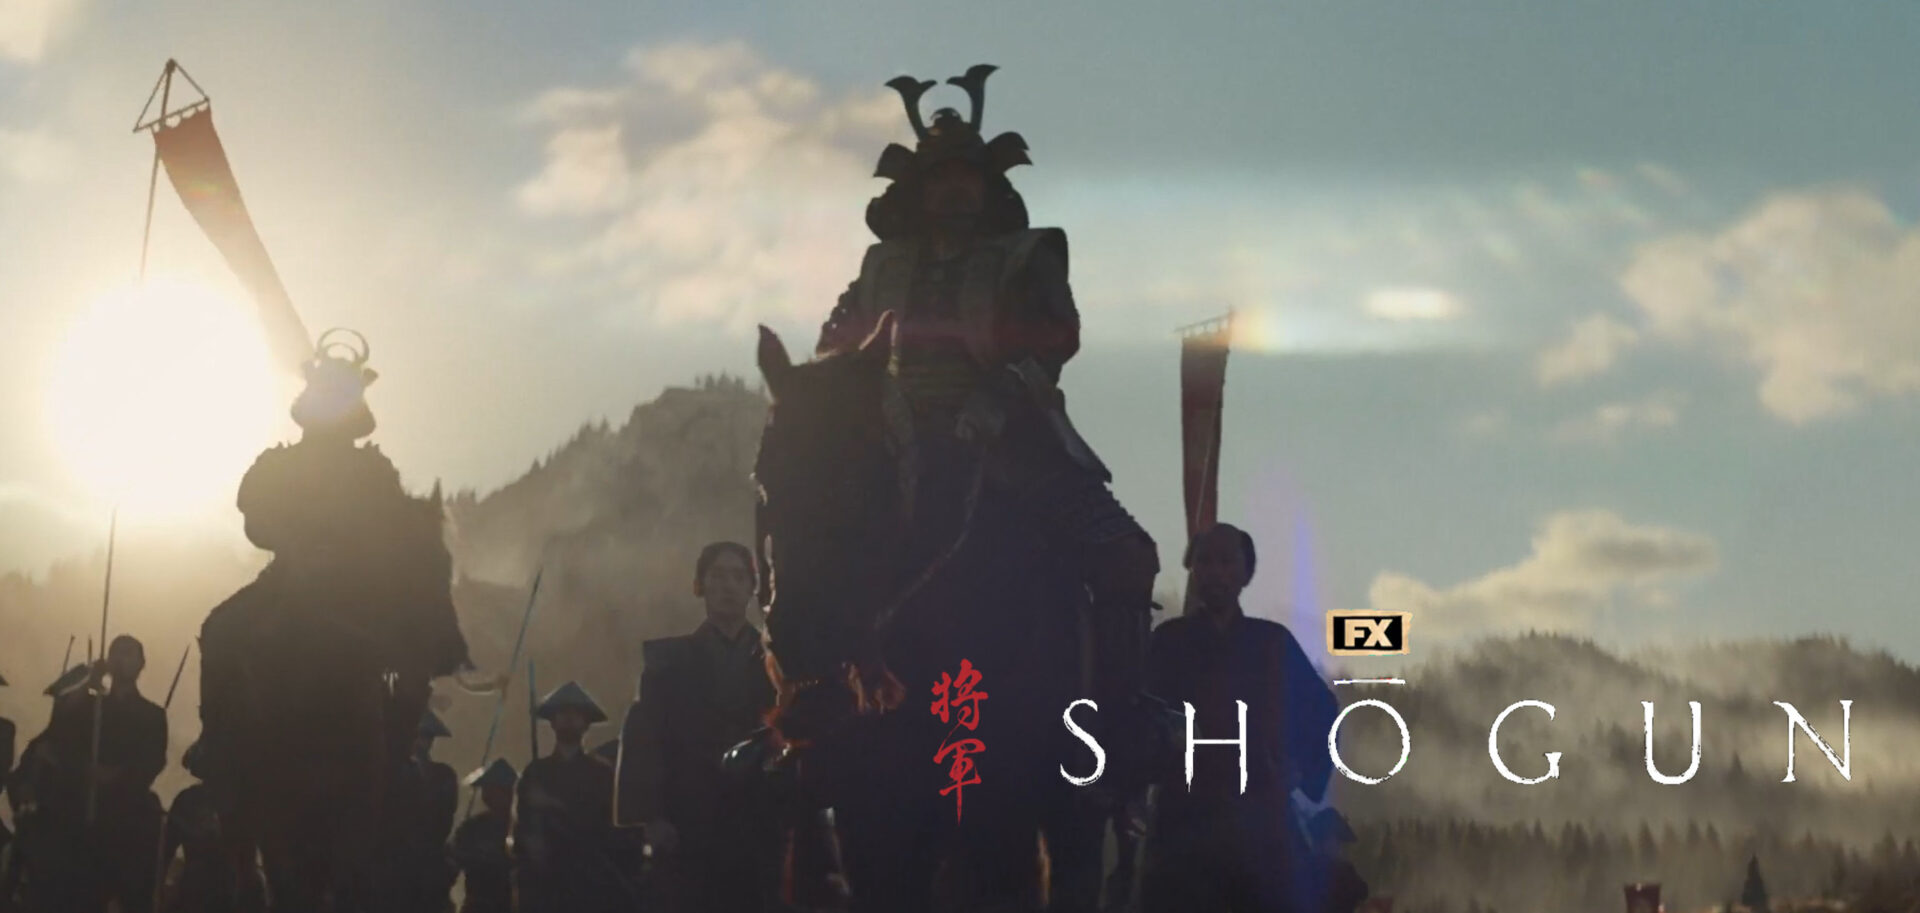 fx shogun full trailer banner